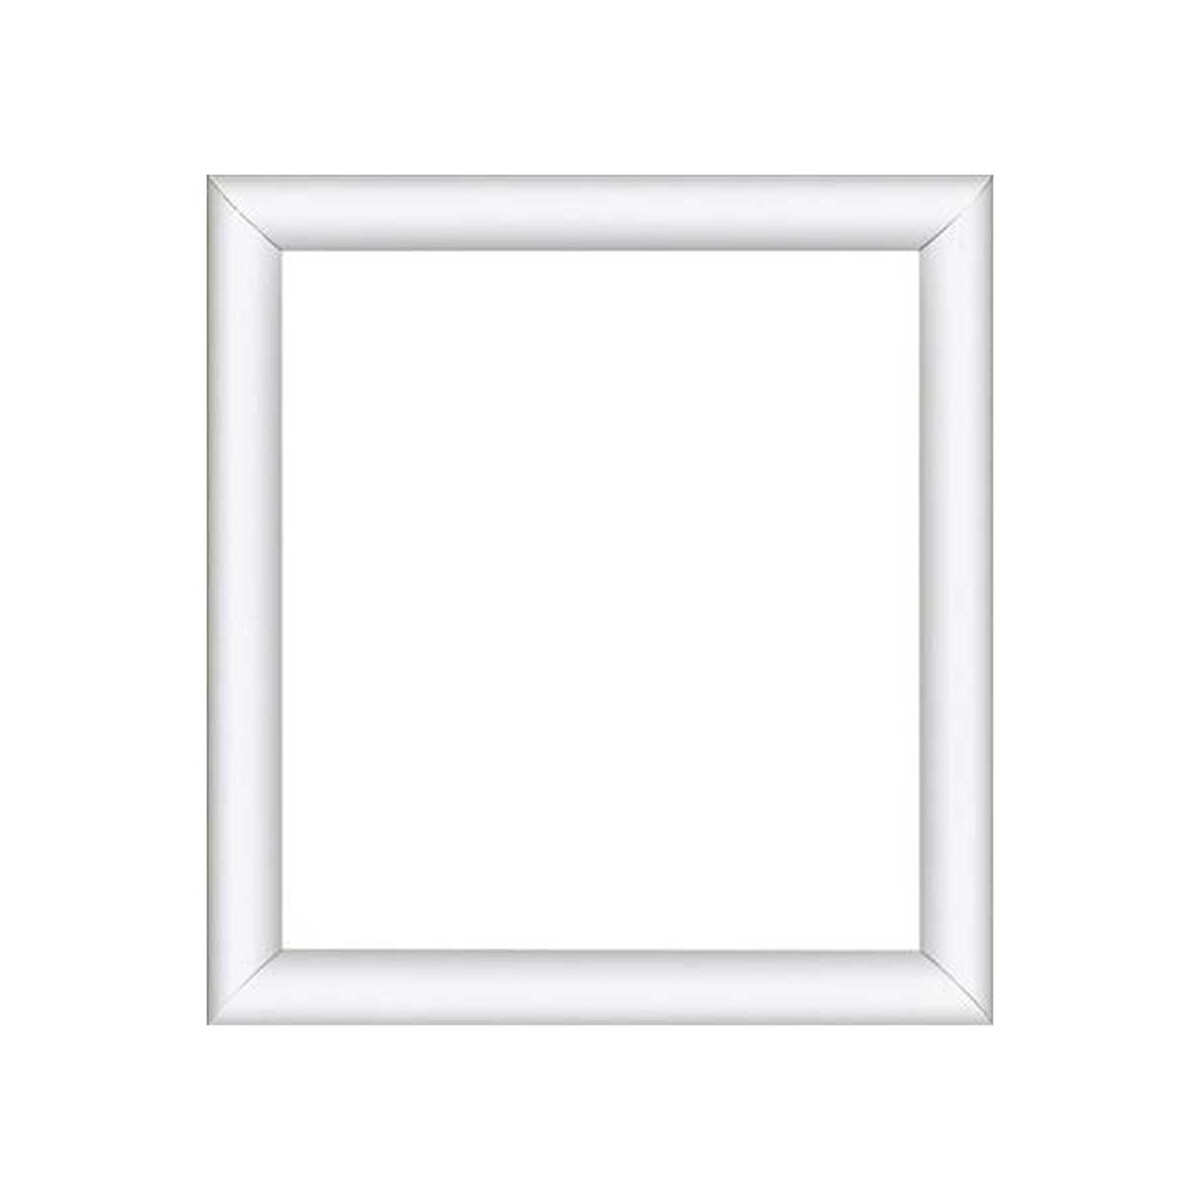 Houten frame 1293/13x16 cm